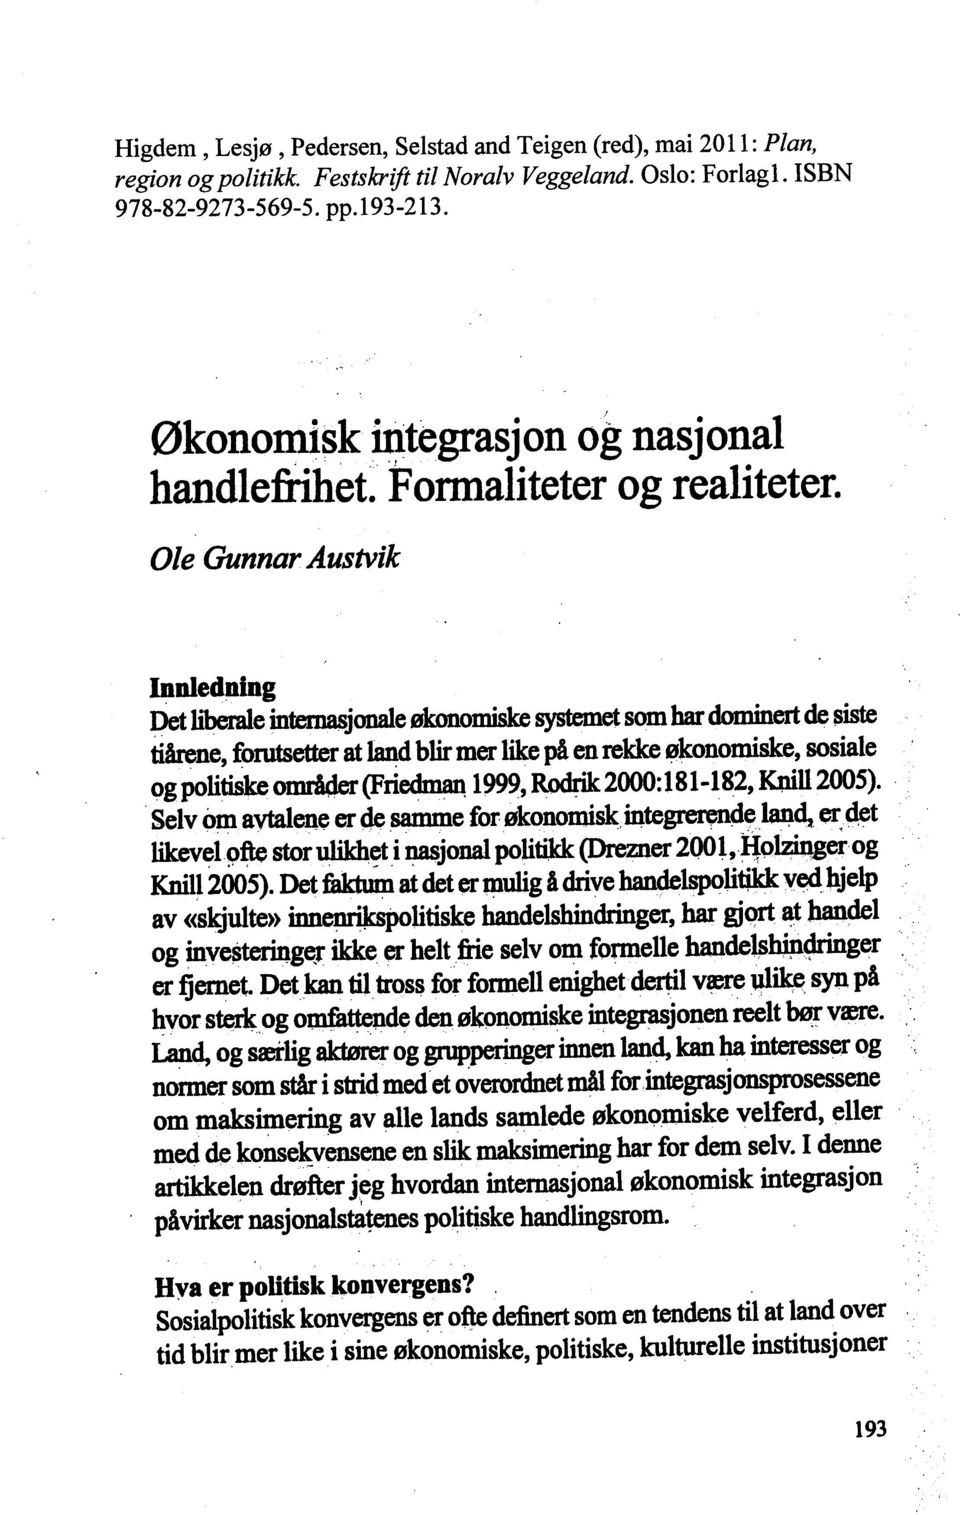 Ole Gunnar Austvik Innledning Ø liberale internasjonale økanomisk +e systemet Ø har dominert Ø siste tiårene, forutsetter at land blir Øer like p å en rekke økøomiske, sosiale og Ølitiske områder